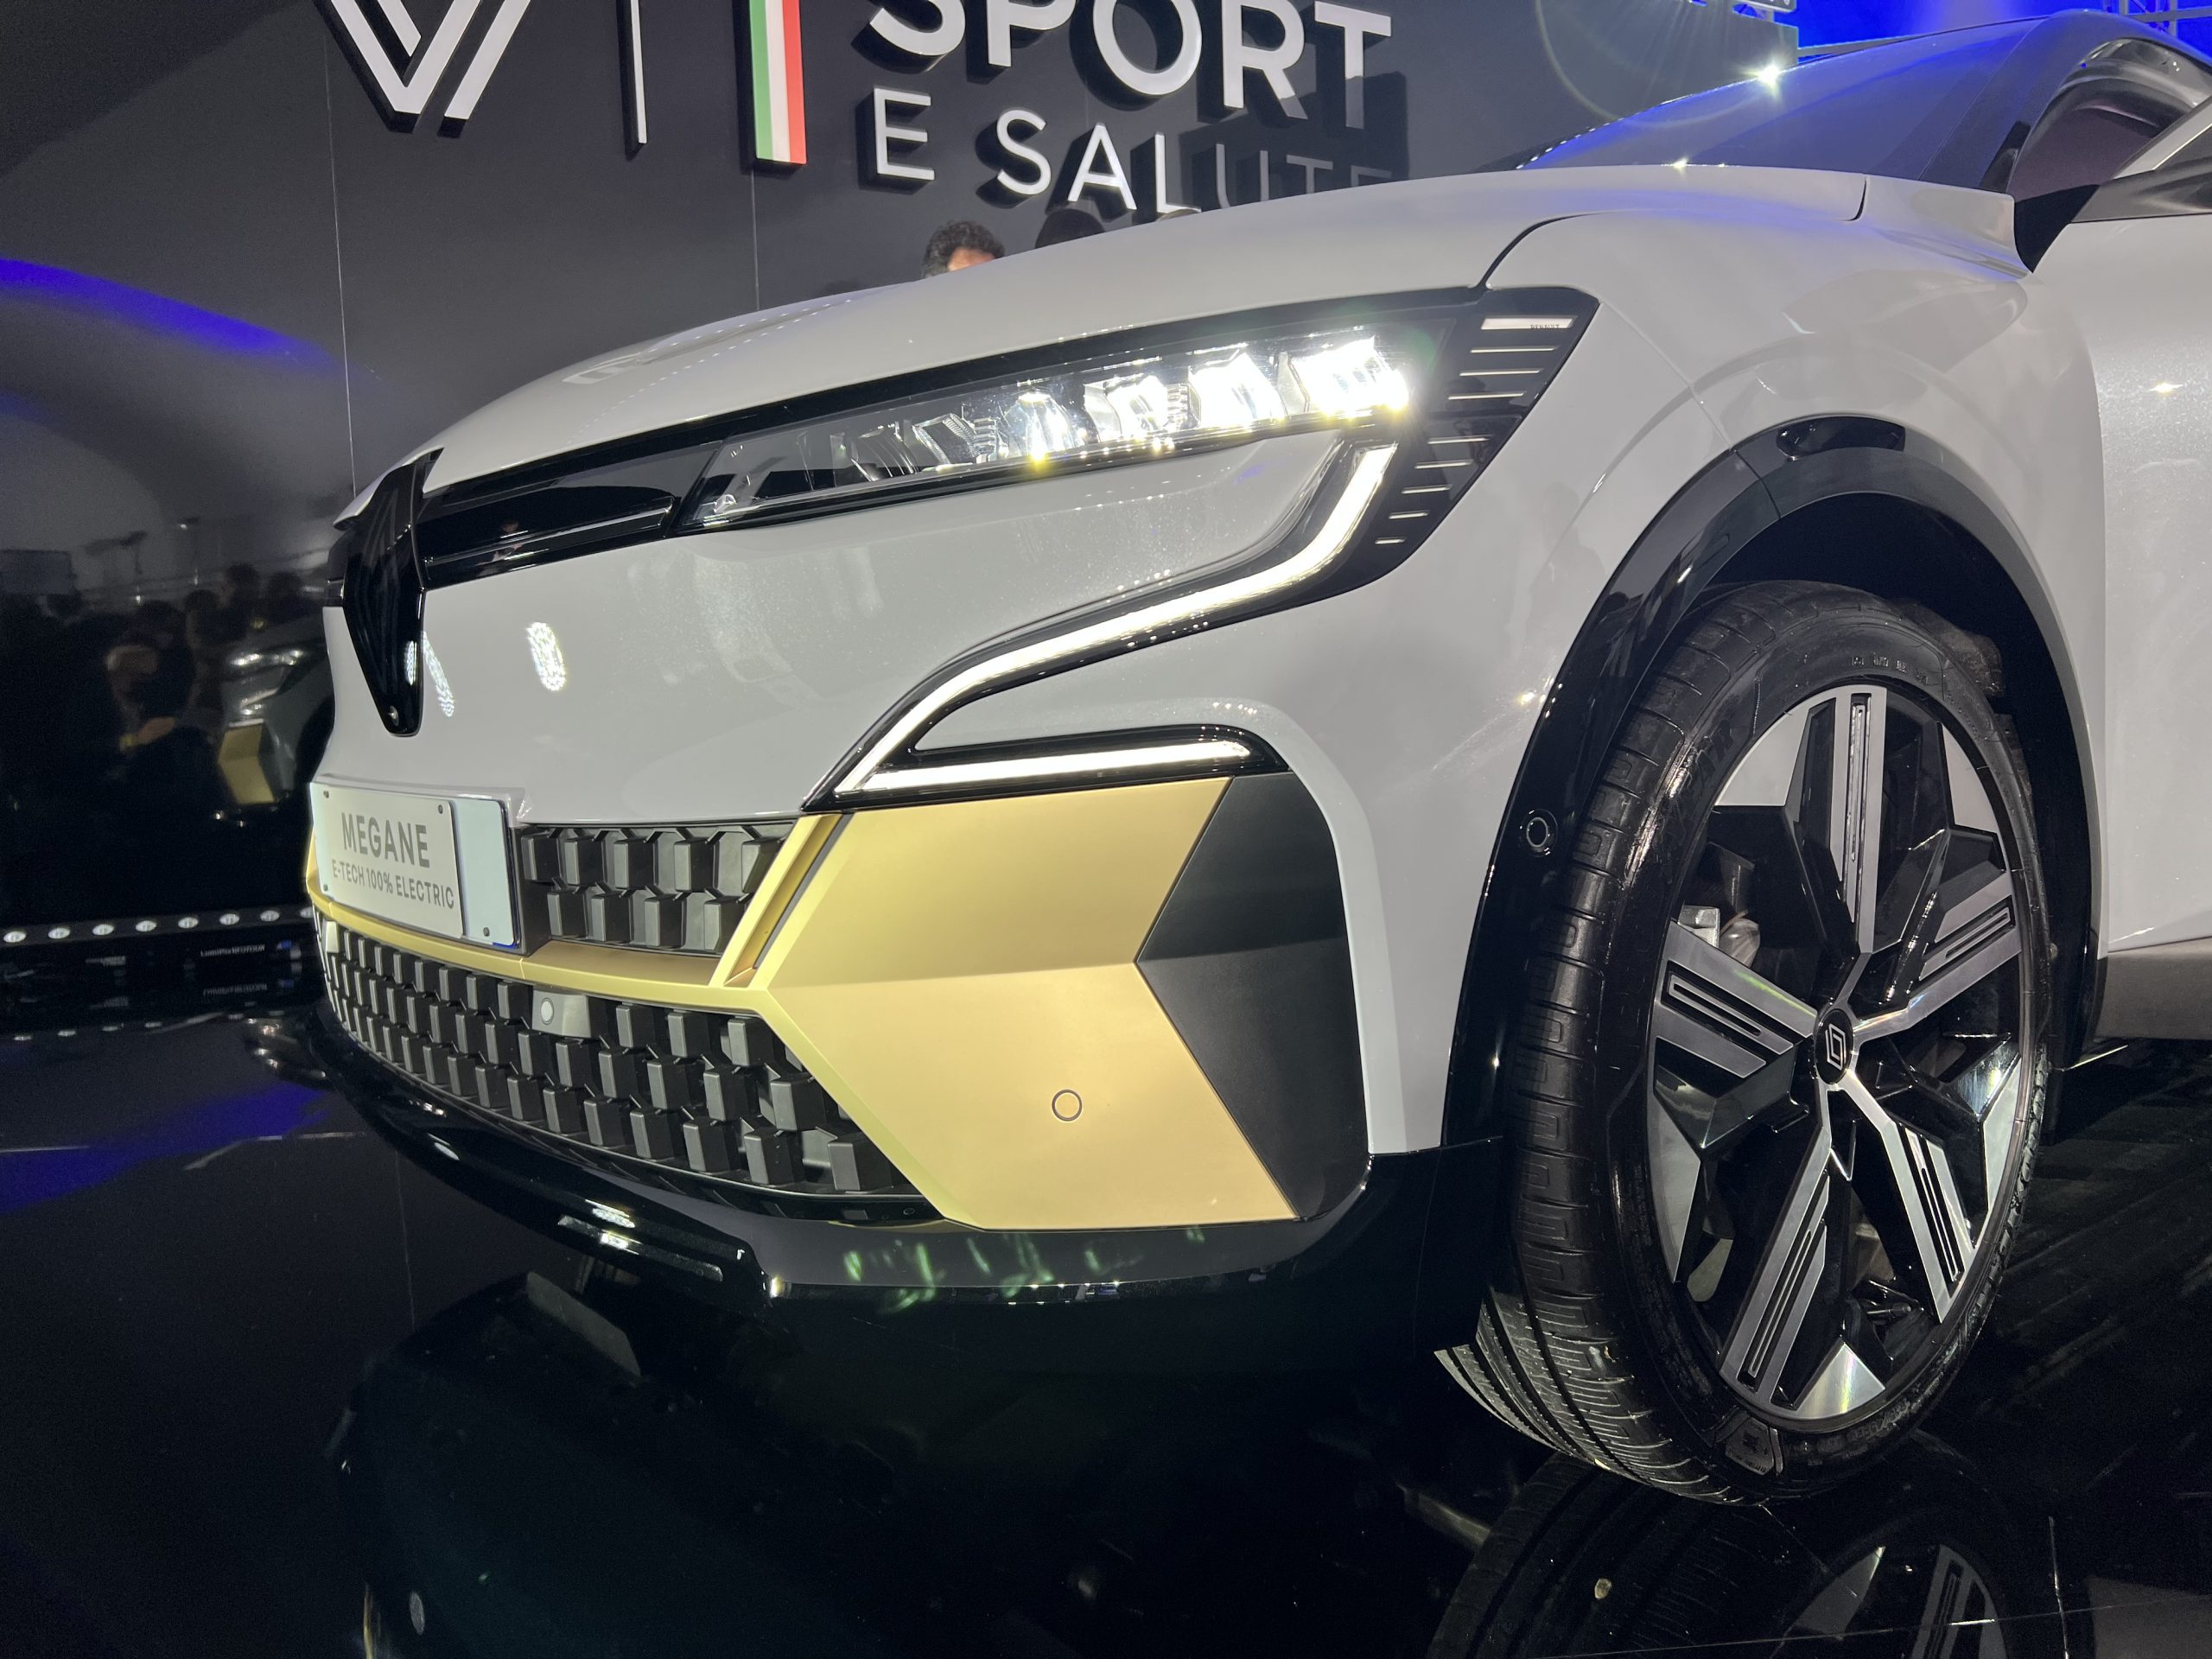 Renault Megane e-Tech elettrica, con Sport e Salute per il tempo di qualità